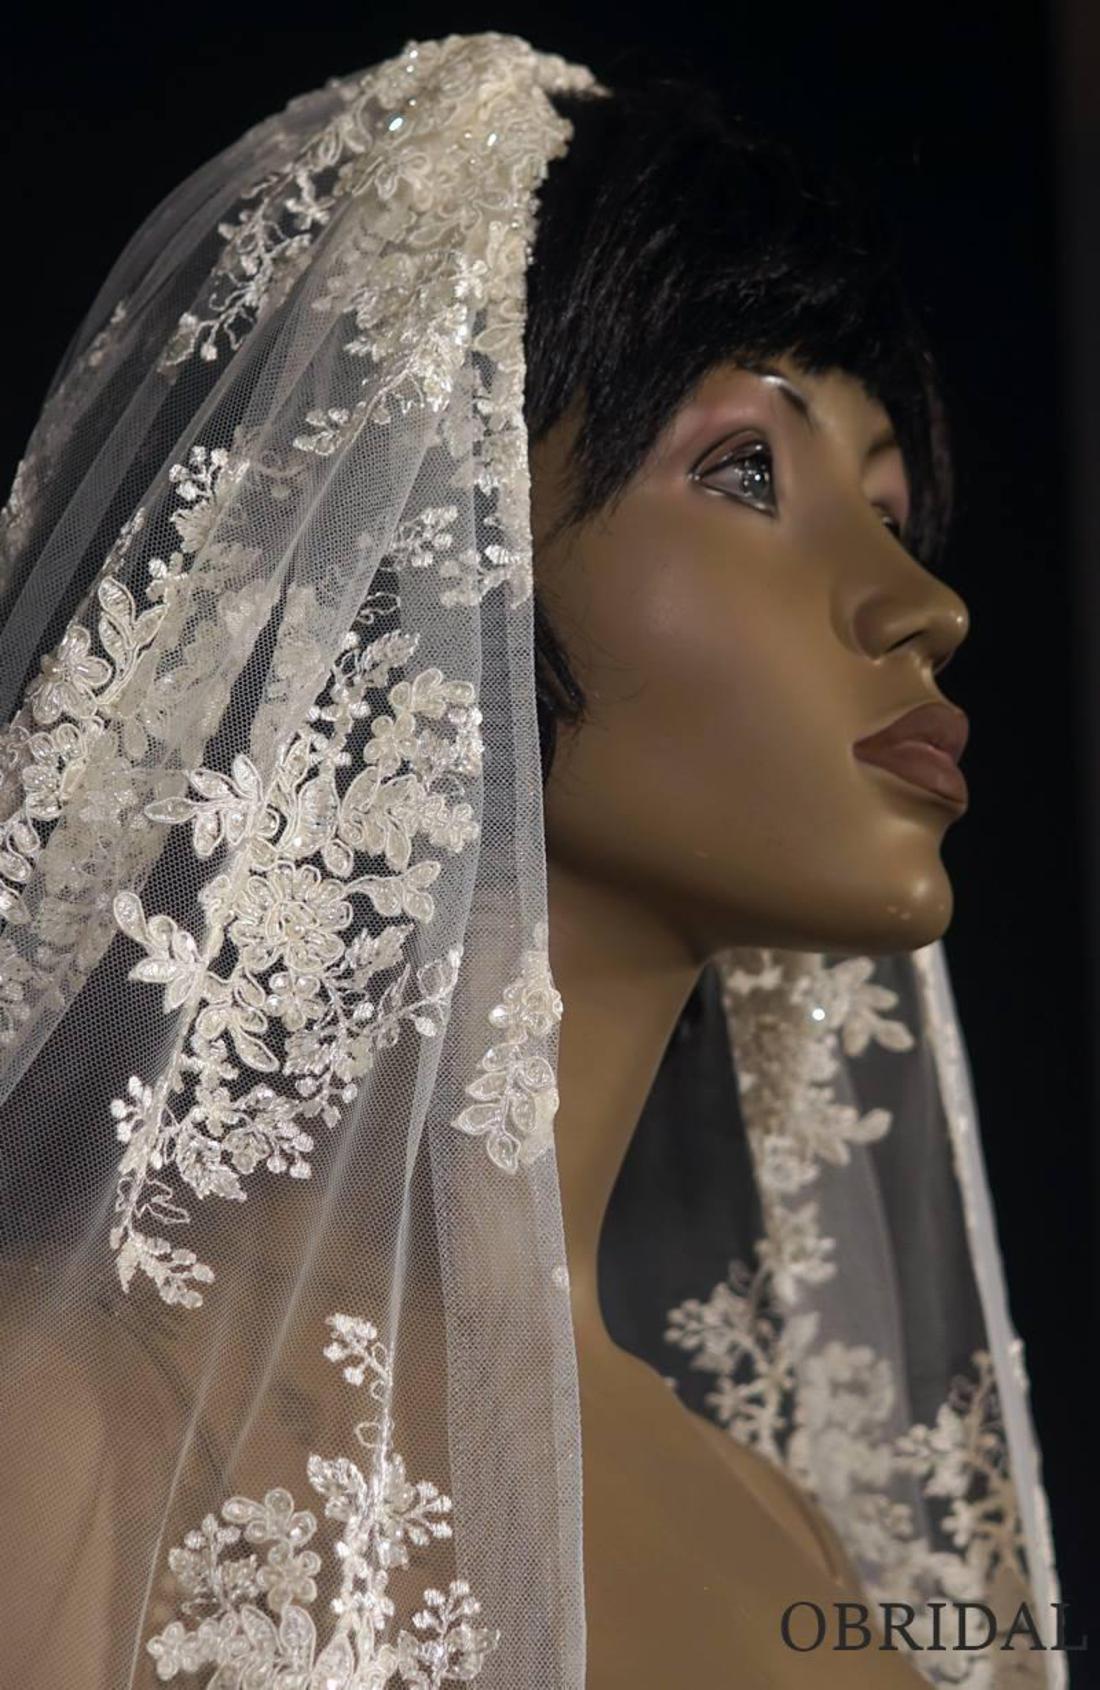 Wedding Bridal Veil With Lace, Wedding Cathedral Veil, Veil With Flower  Lace Appliqué, Floral Lace Veil, Wedding Veil With Flower Lace 